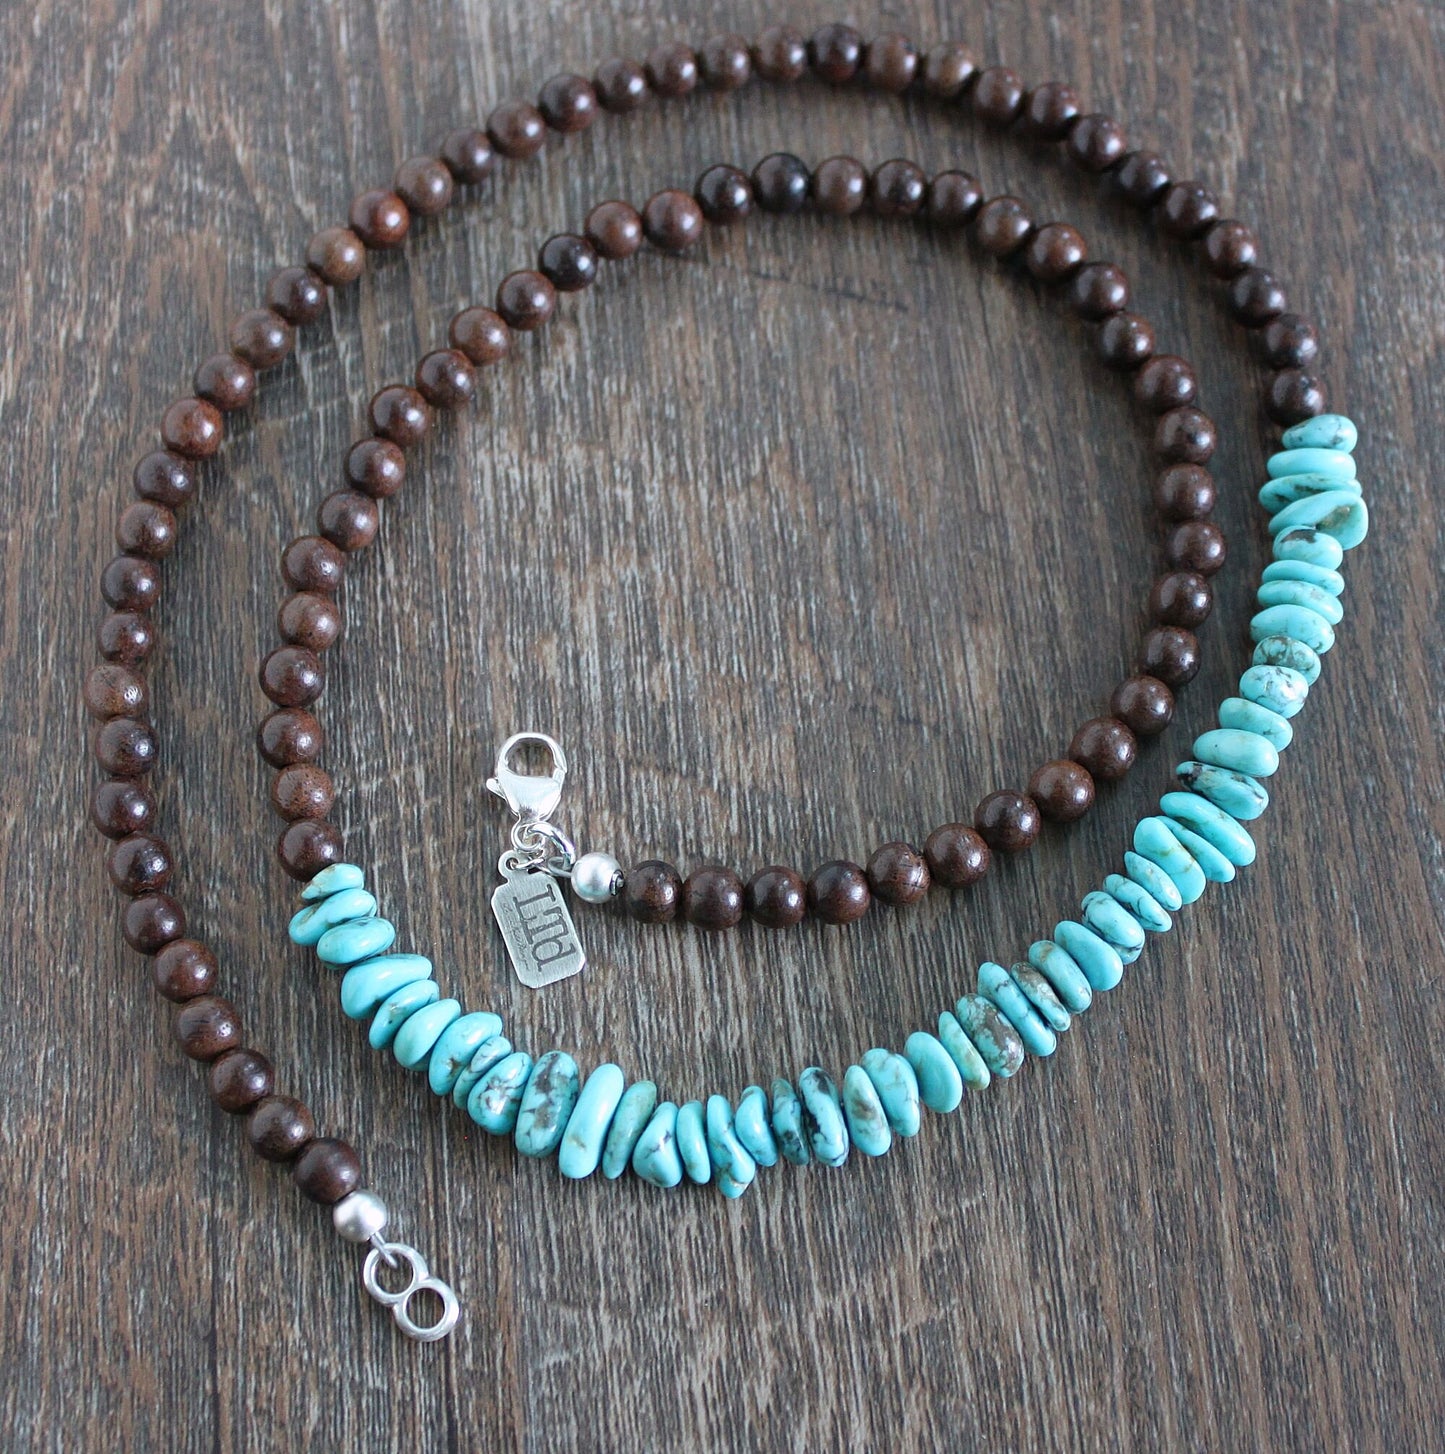 Ebony Wood and Turquoise bead necklace